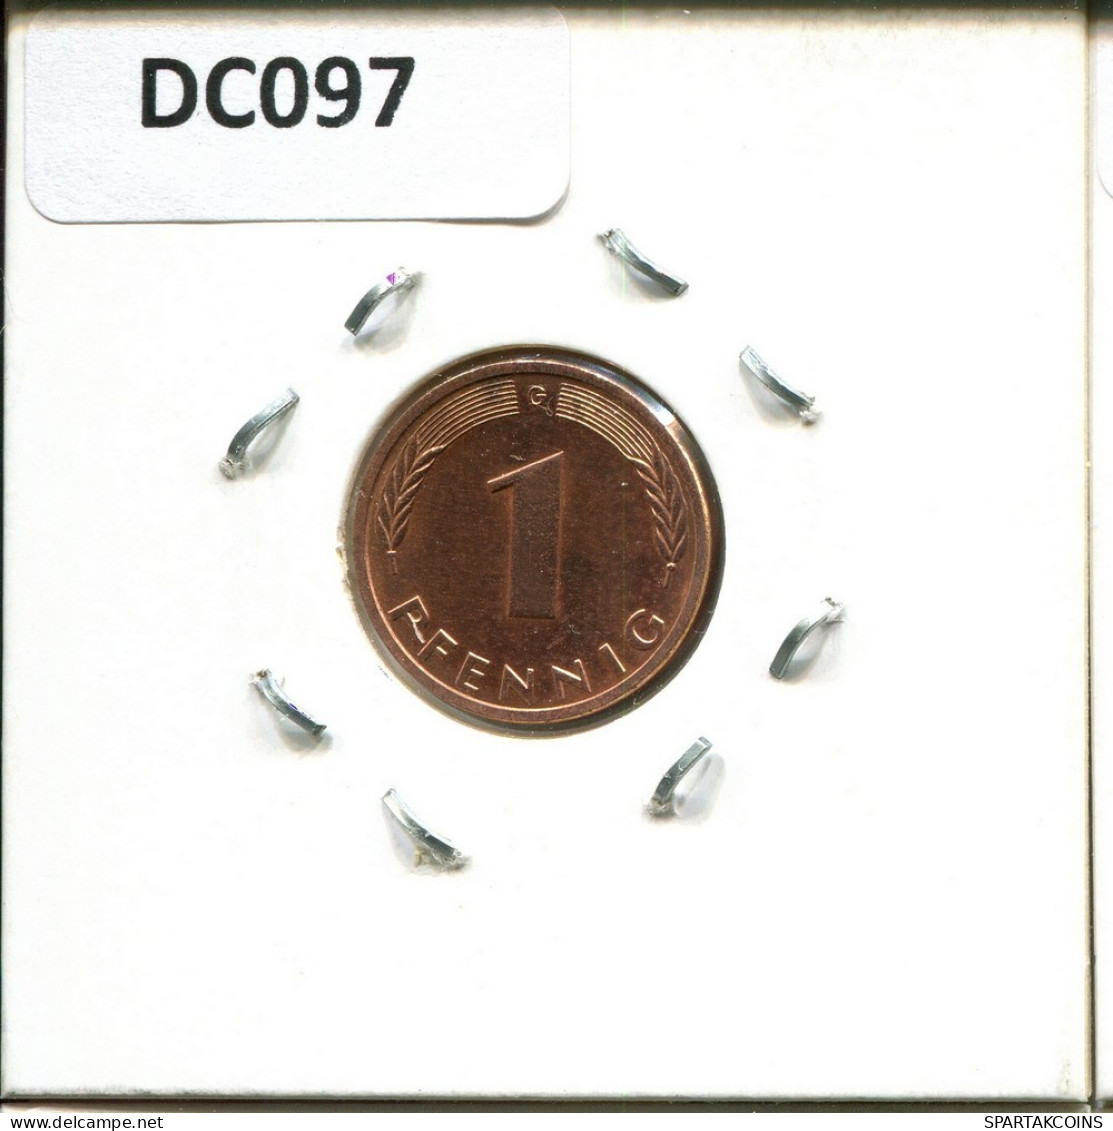 1 PFENNIG 1988 G BRD ALEMANIA Moneda GERMANY #DC097.E.A - 1 Pfennig